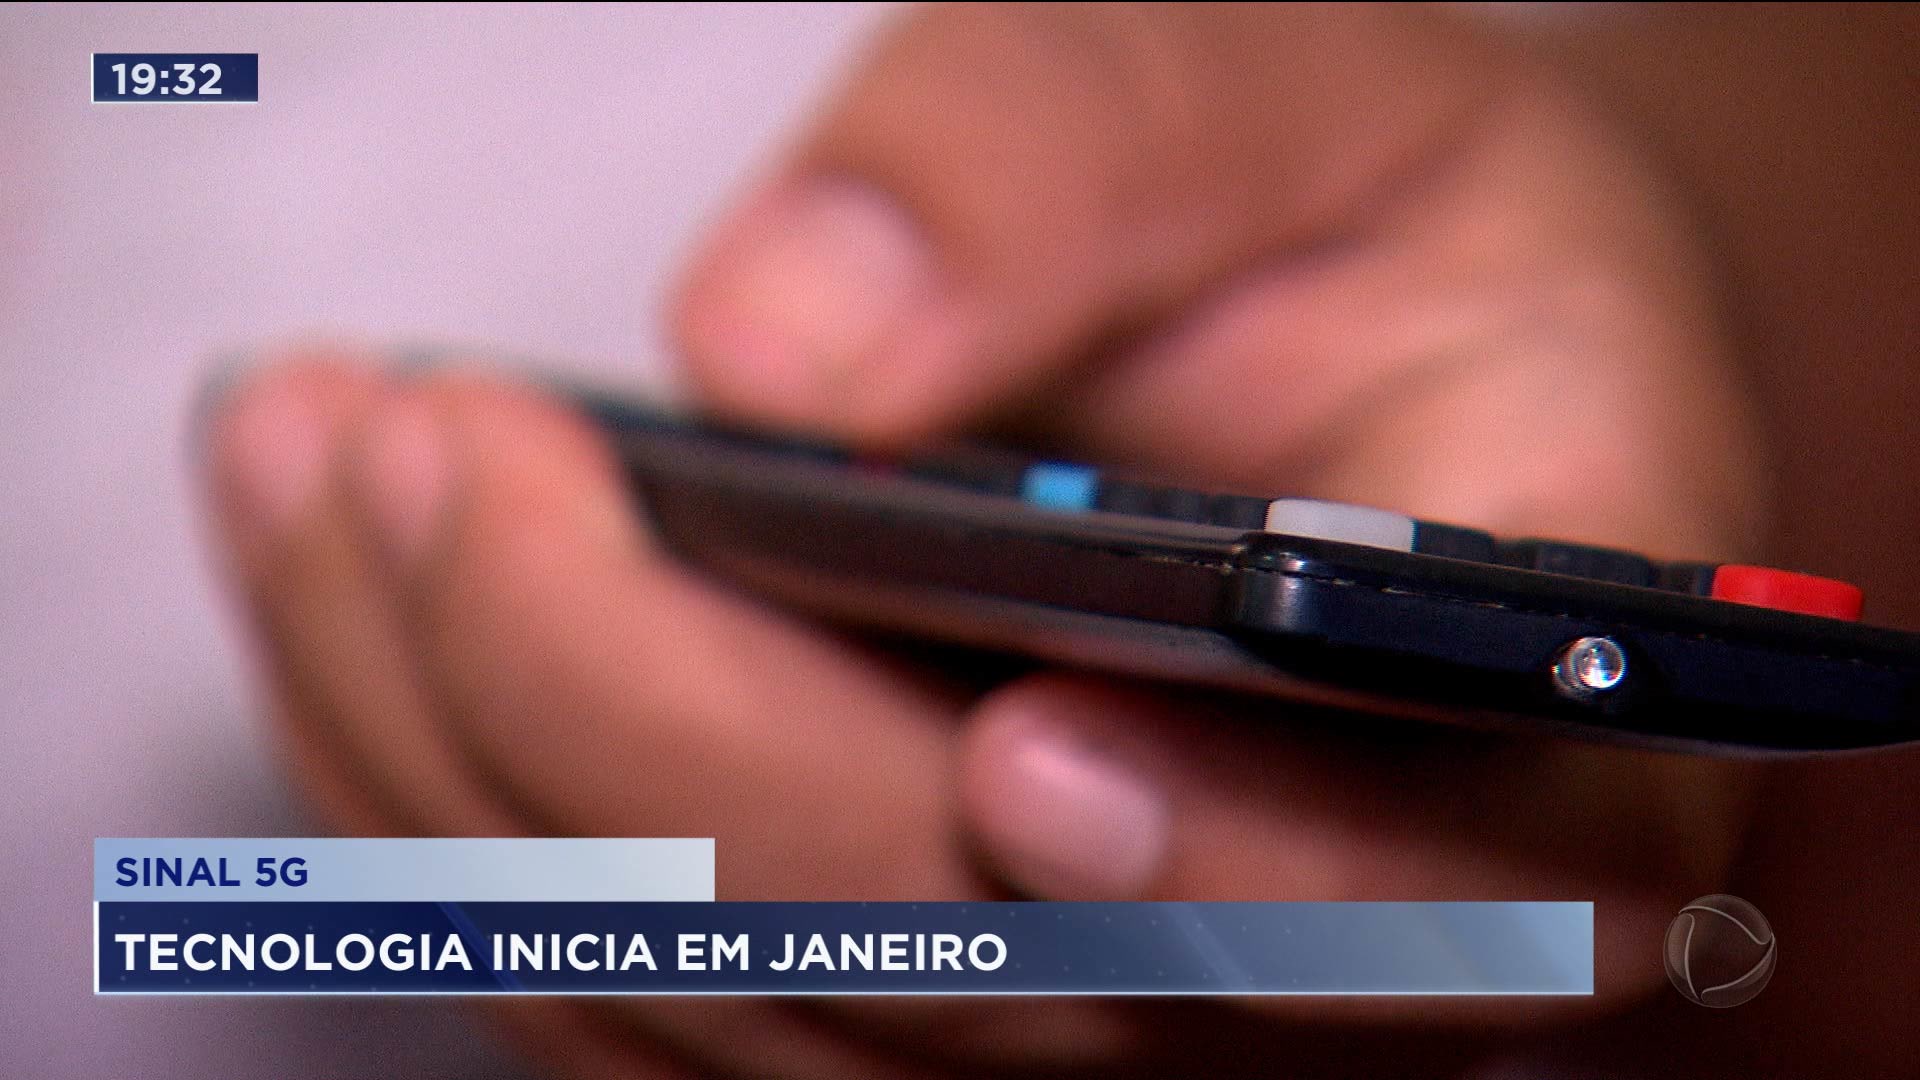 Vídeo: São José dos Campos vai receber a tecnologia 5G